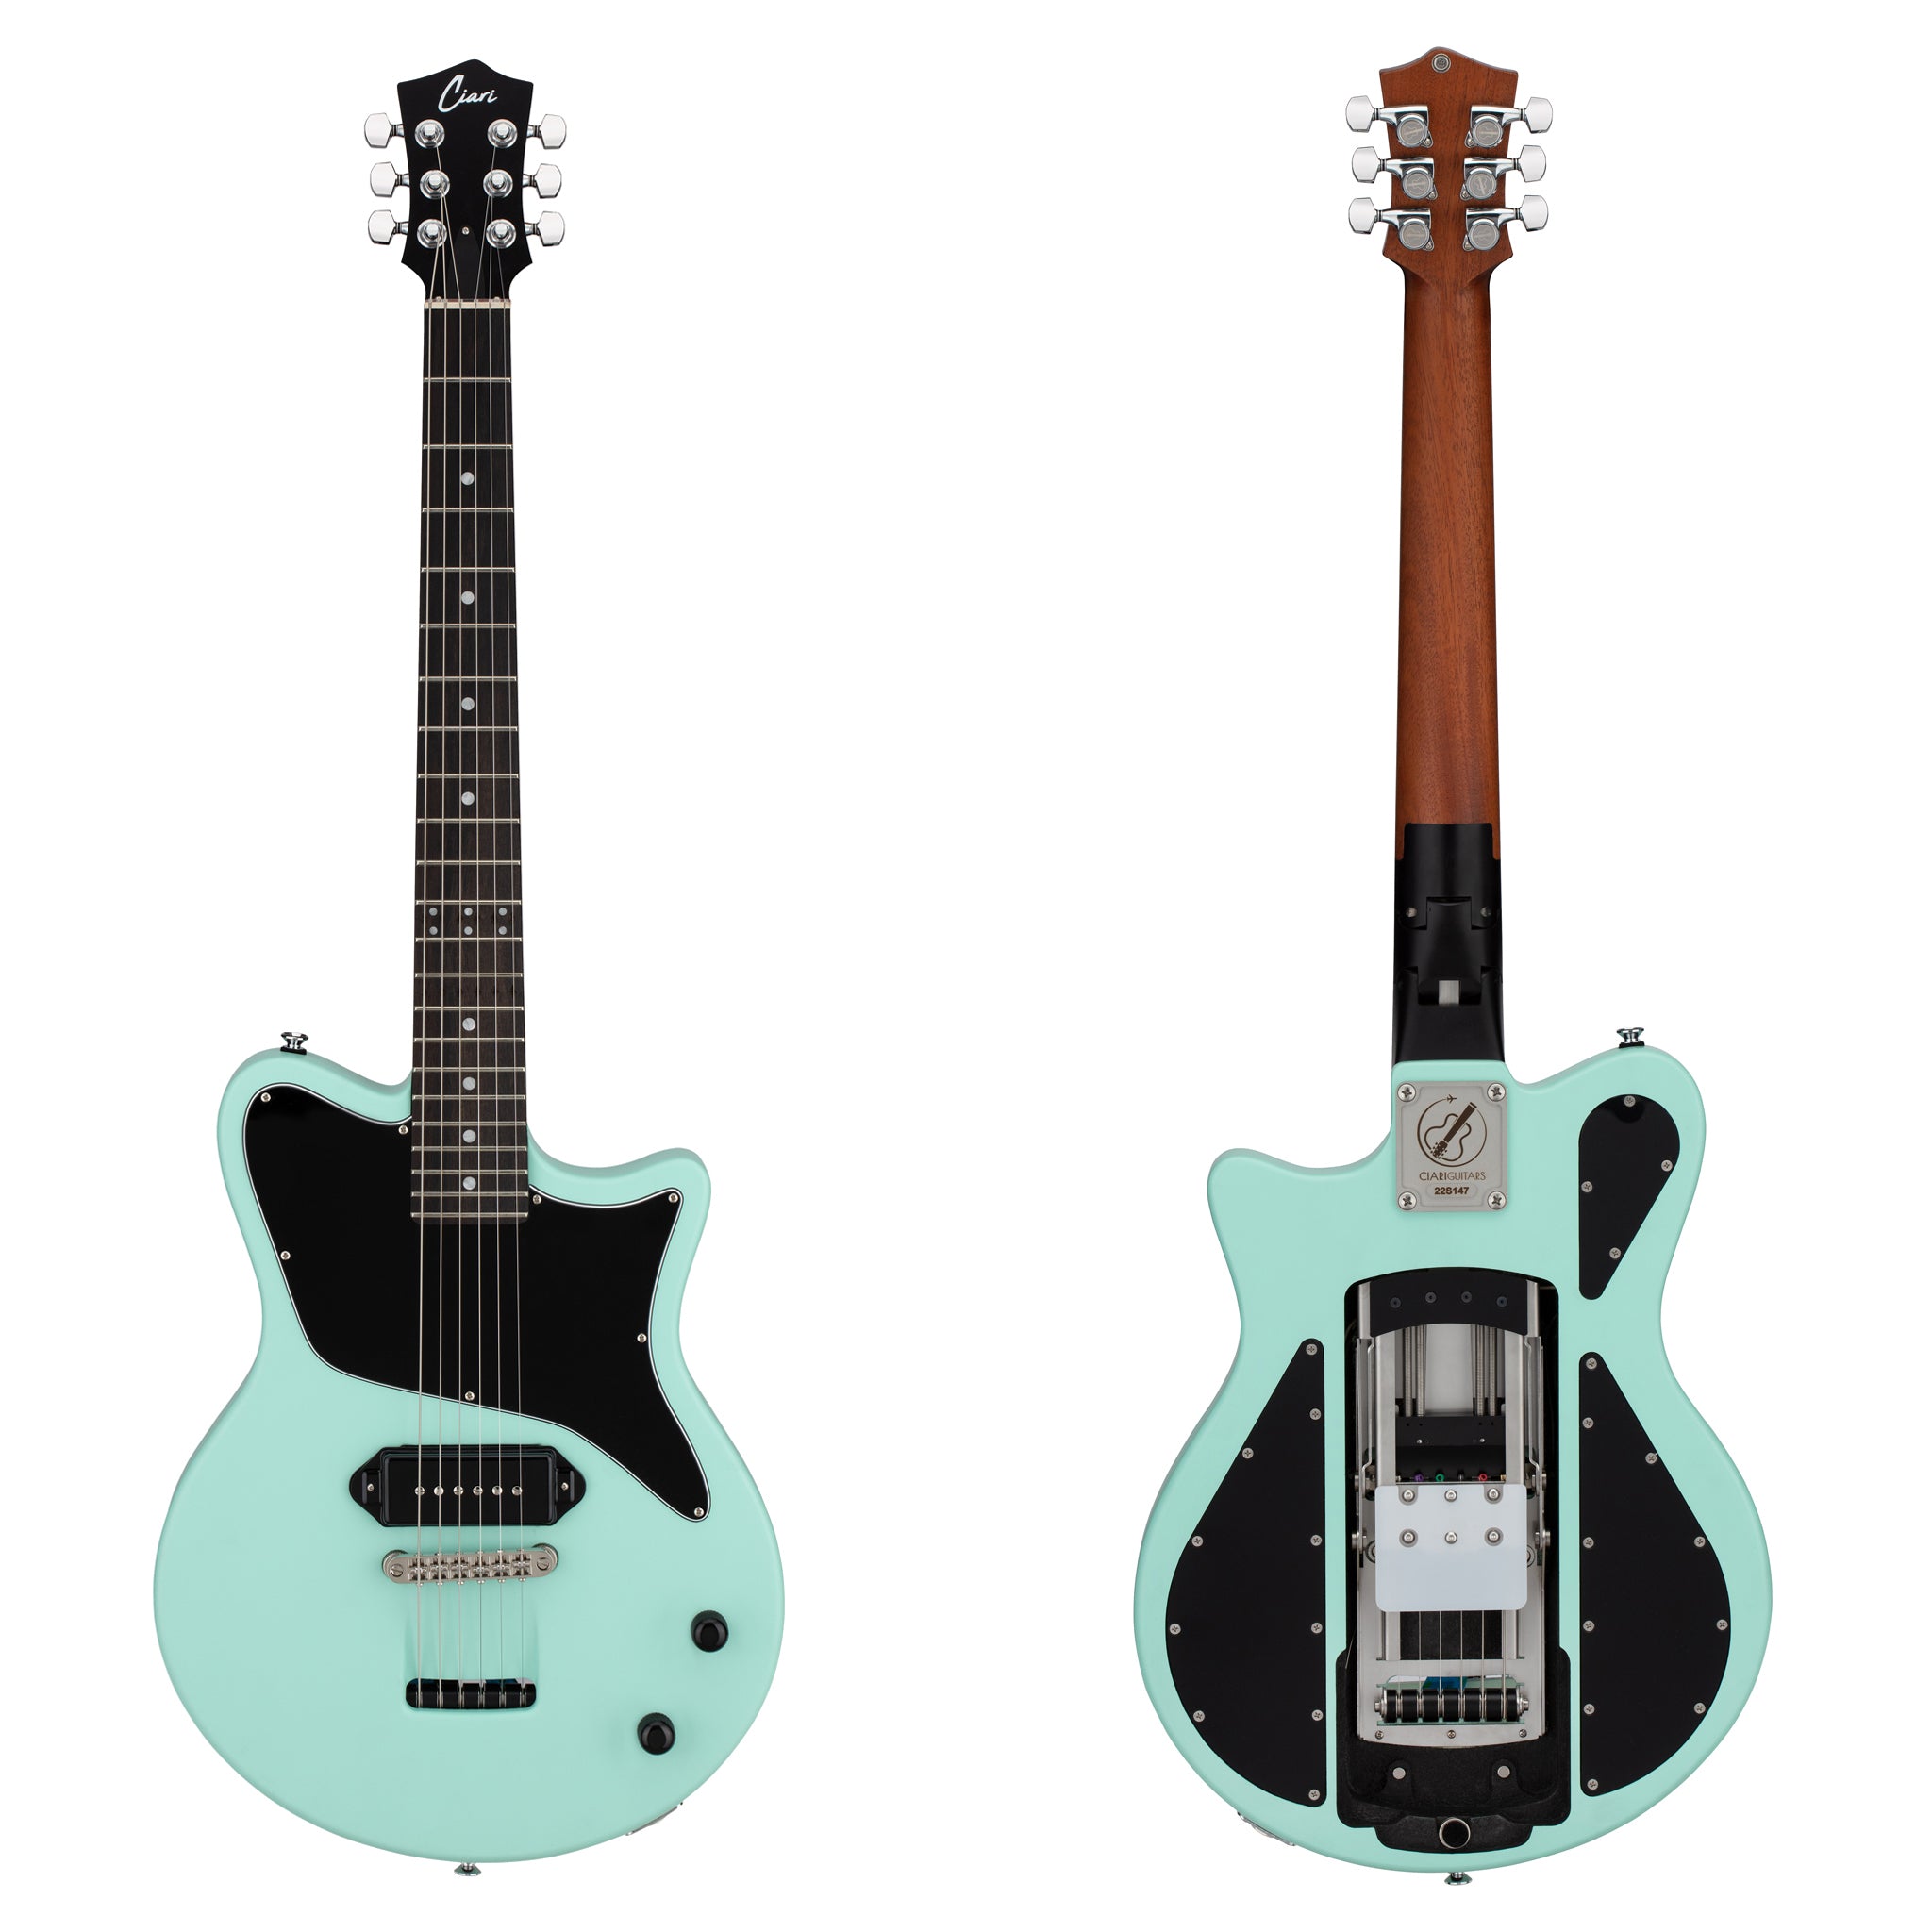 The Ascender™ P90 Solo Electric Guitar in Seafoam – Ciari Guitars